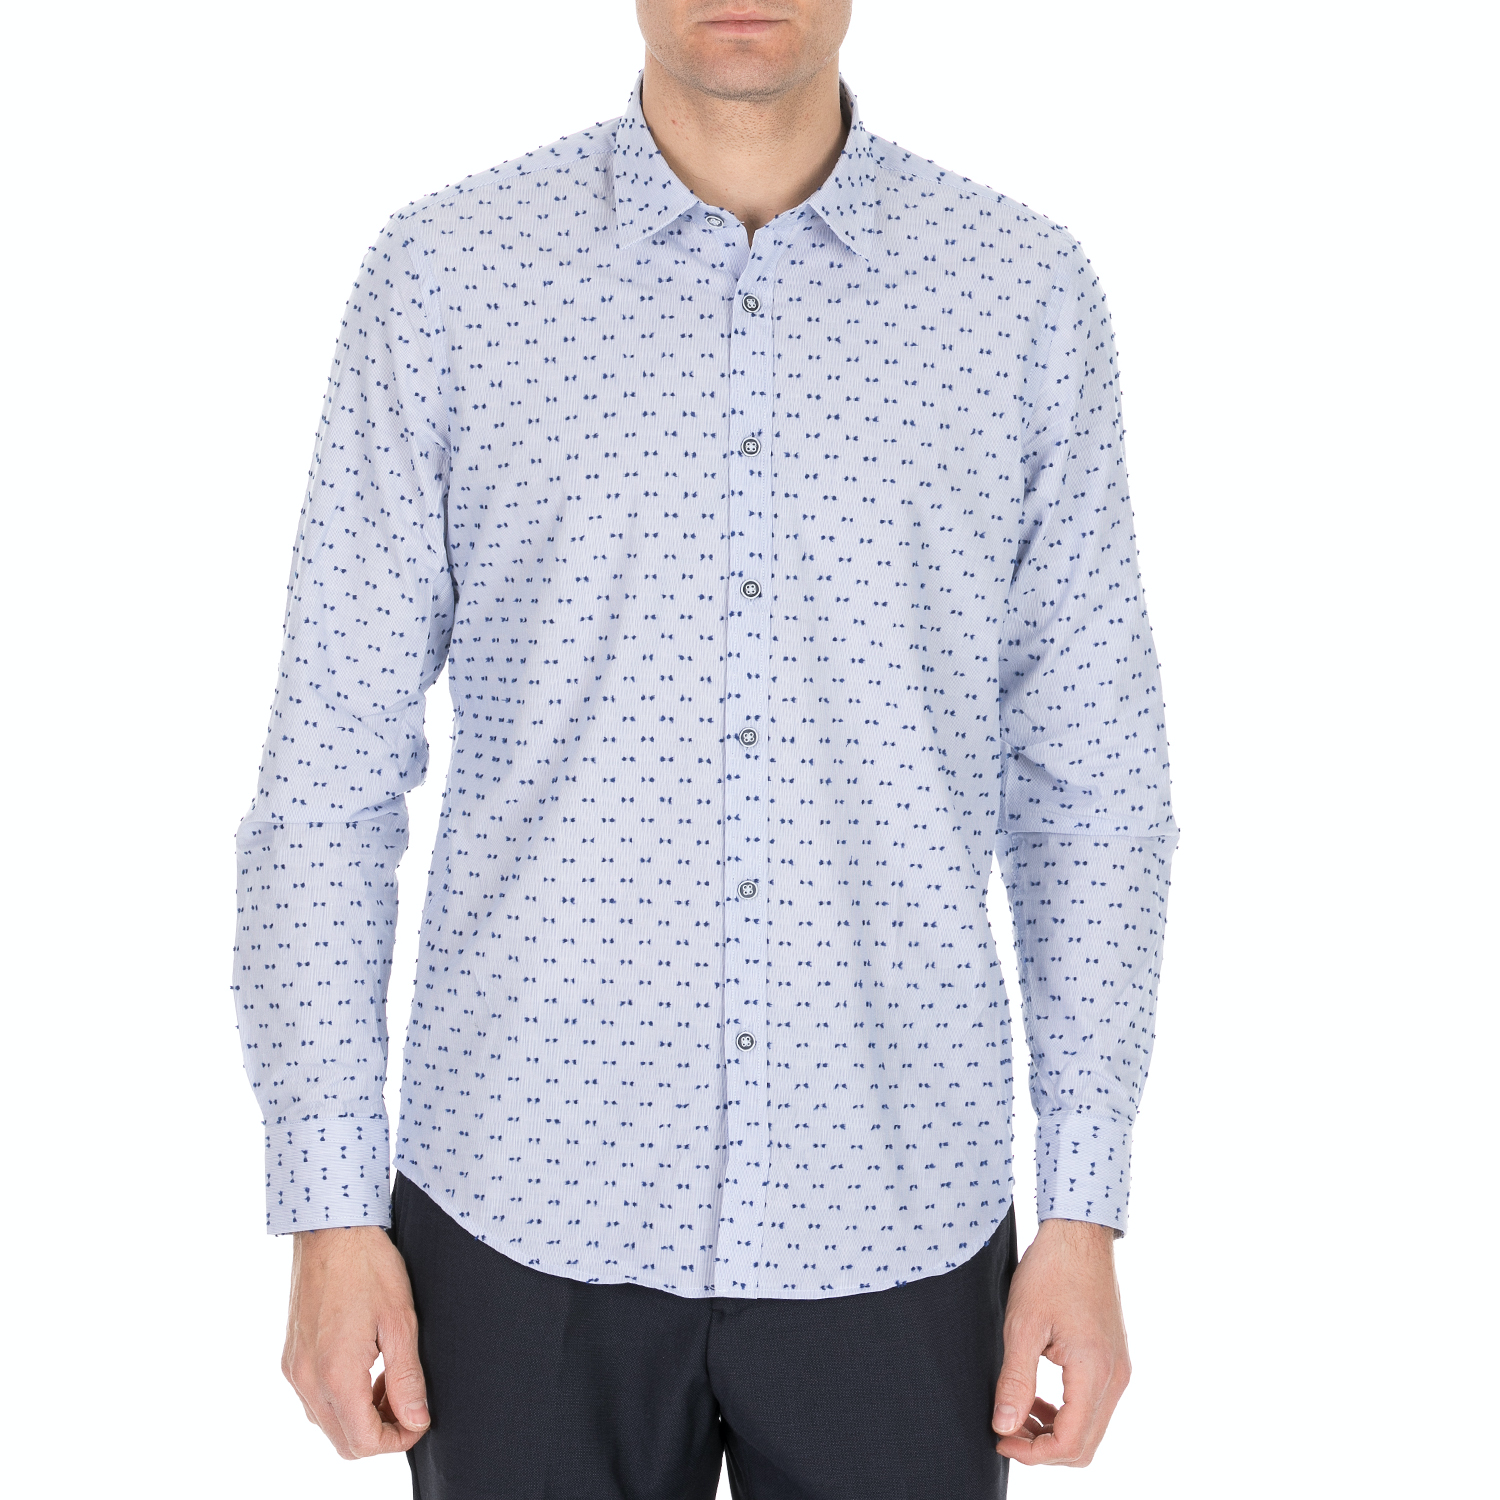 Ανδρικά/Ρούχα/Πουκάμισα/Μακρυμάνικα SSEINSE - Ανδρικό πουκάμισο SSEINSE γαλάζιο